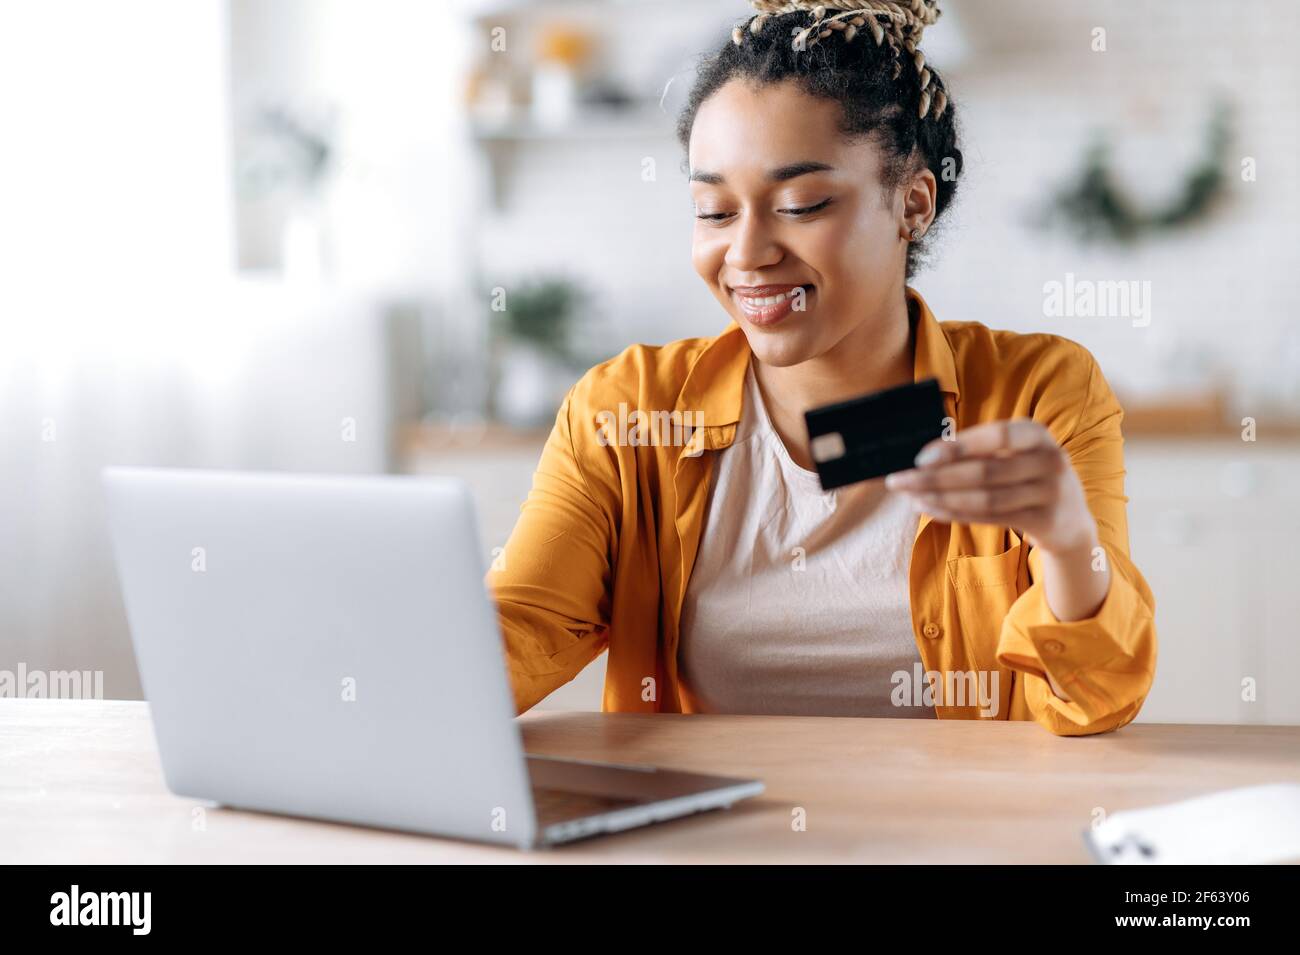 Felice giovane afroamericana donna elegantemente vestito, pagando per gli acquisti online, usa un laptop, tenendo una carta bancaria in mano, digitando le informazioni della carta di credito sulla tastiera e sorridendo Foto Stock